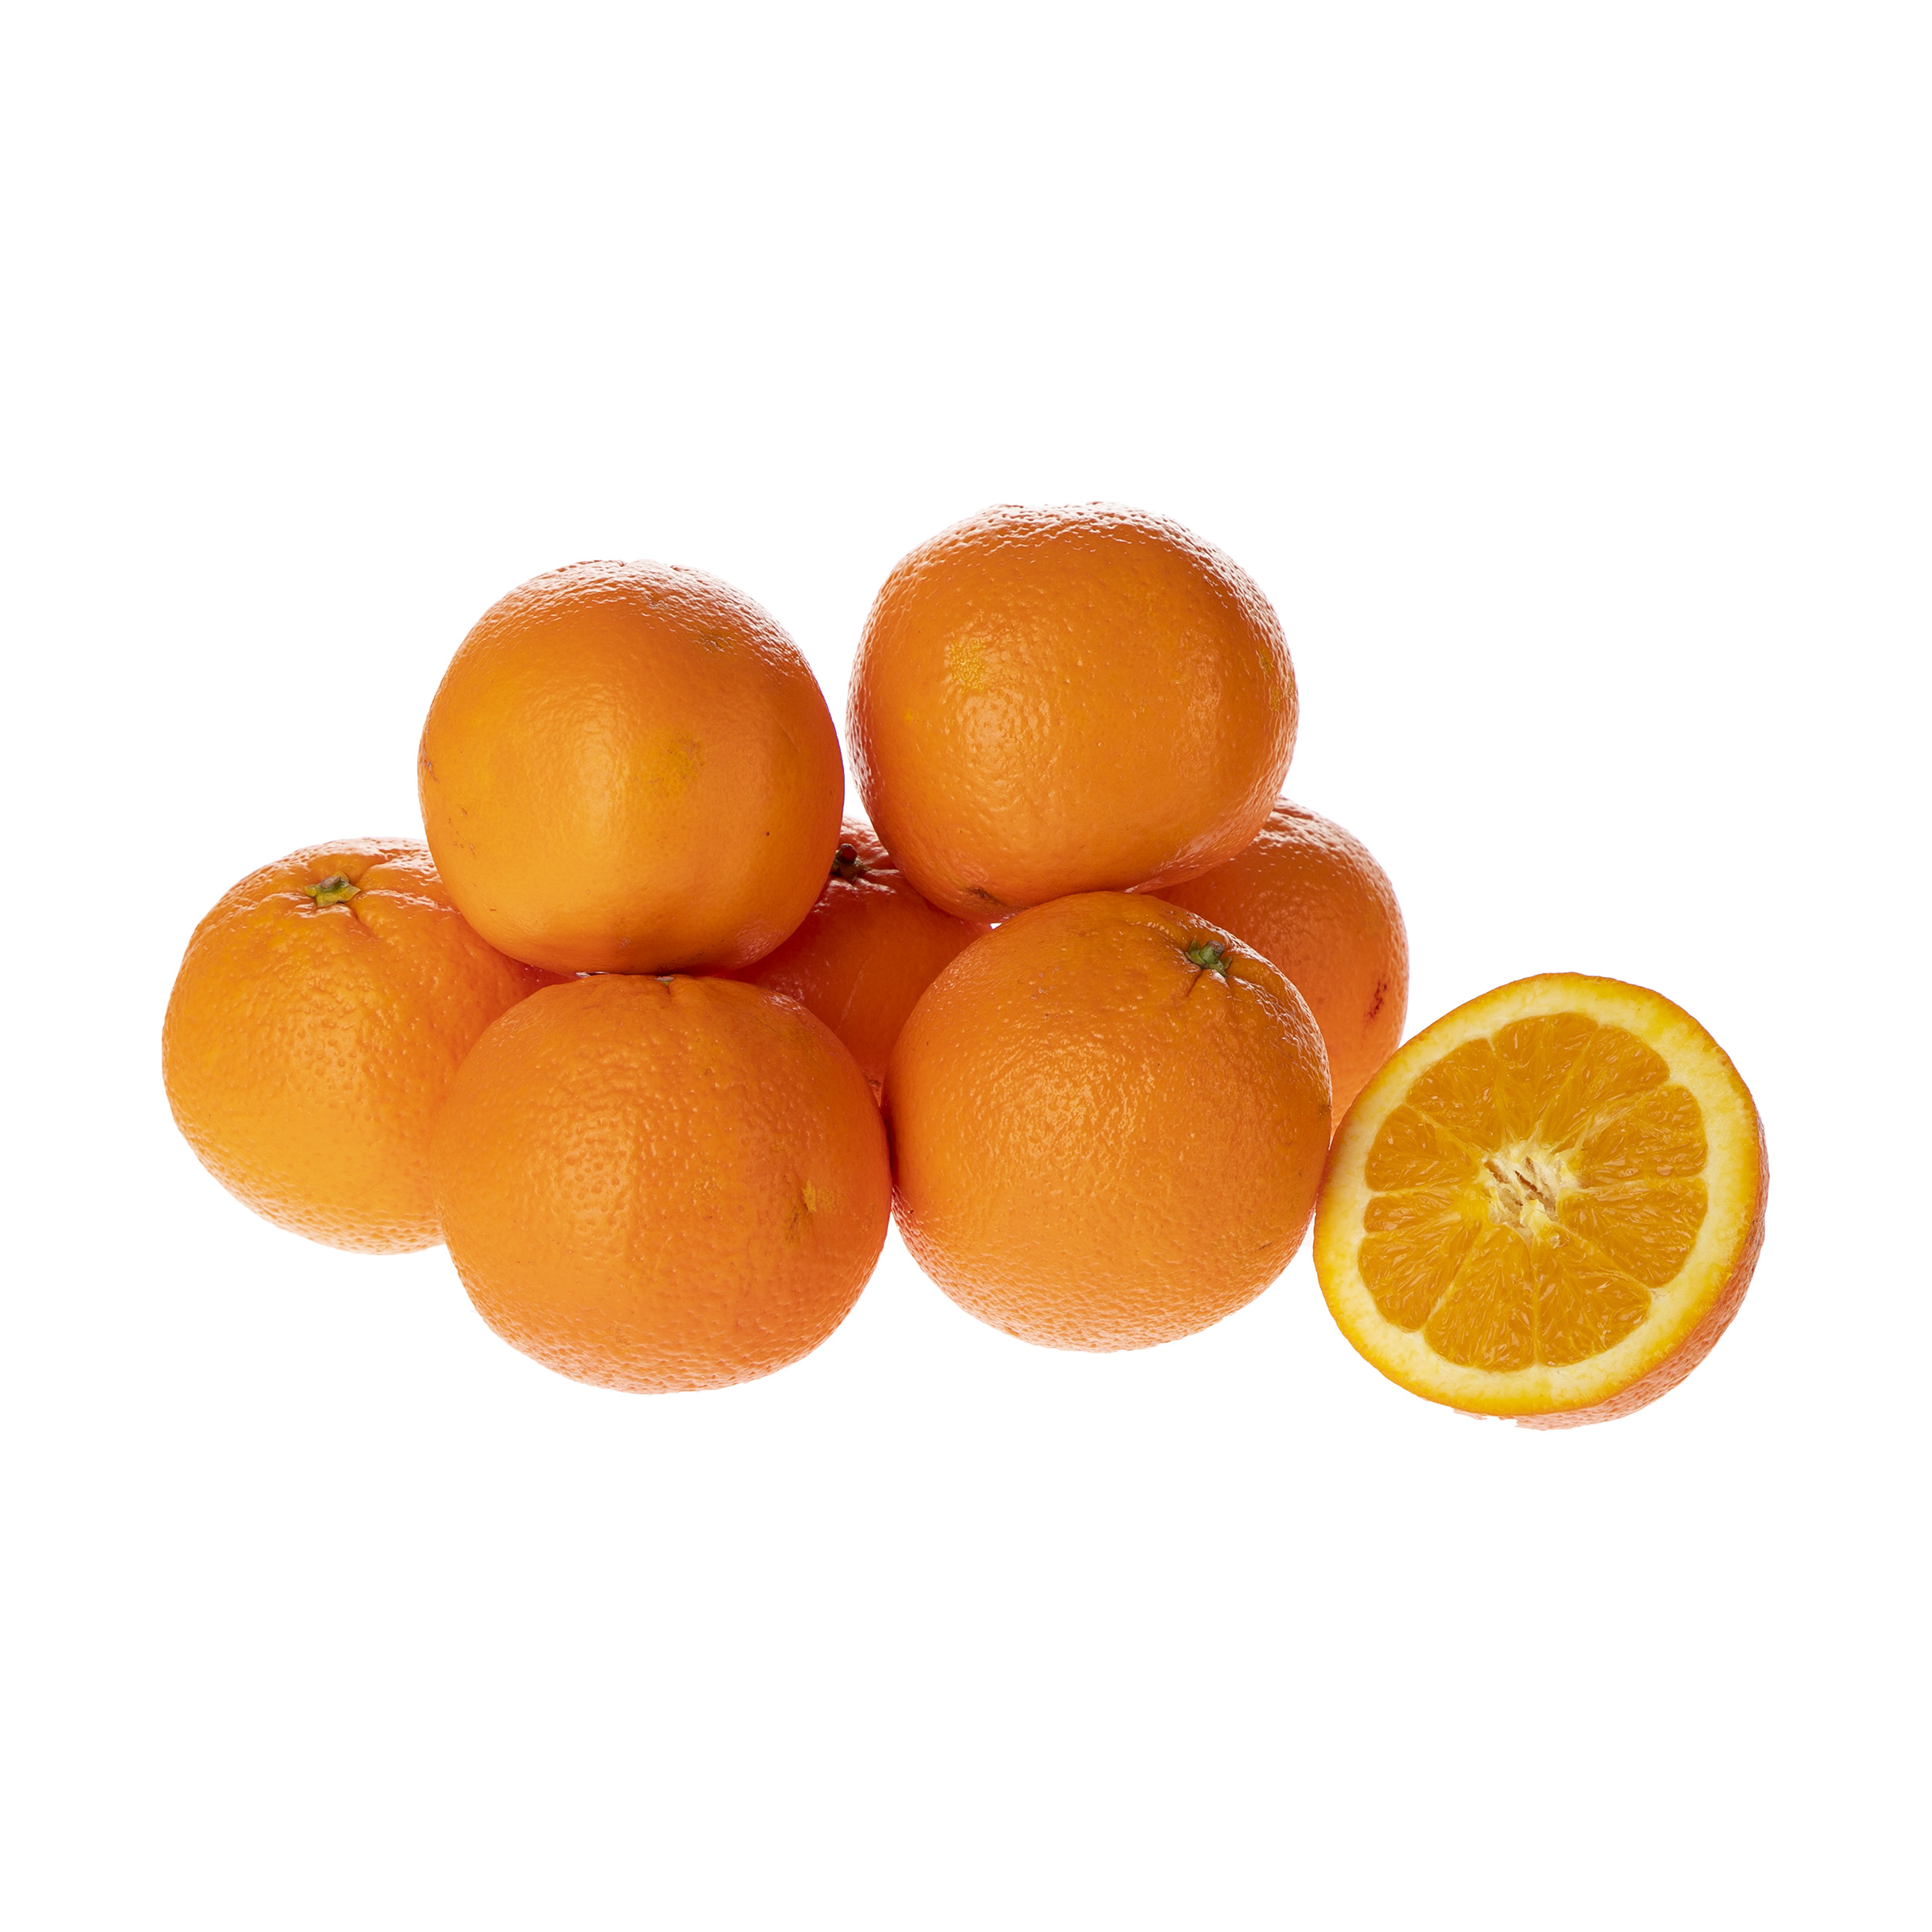 پرتقال تامسون شمال درجه یک - 1.5 کیلوگرم